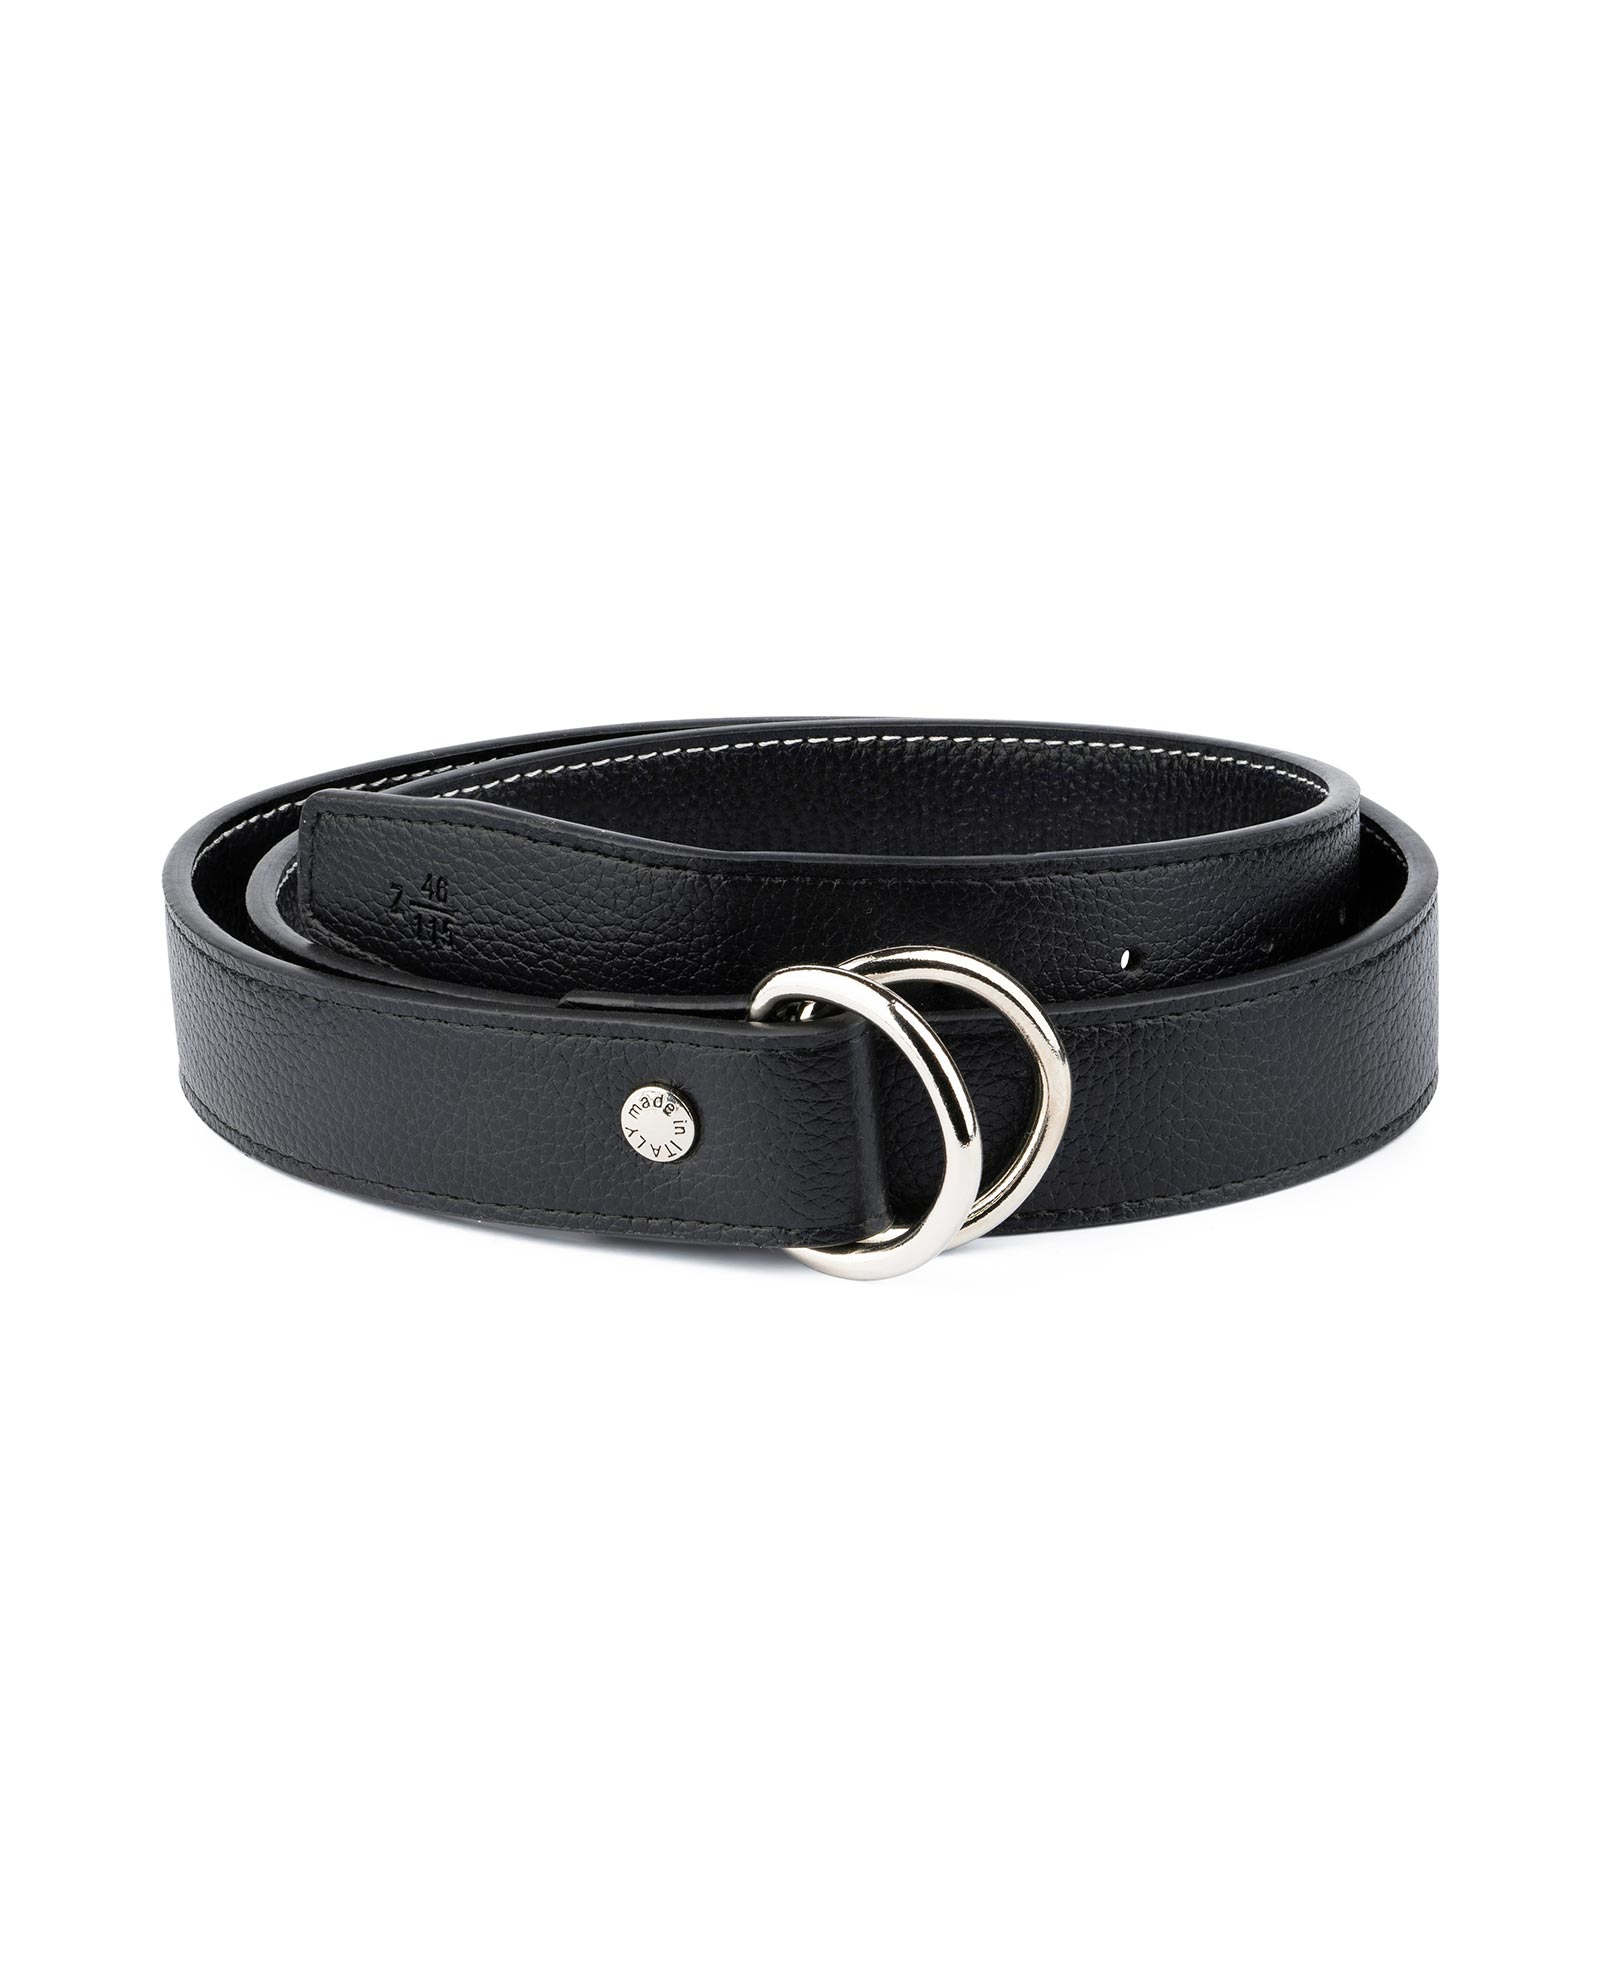 Buy Mens D Ring Belt - Black Leather 